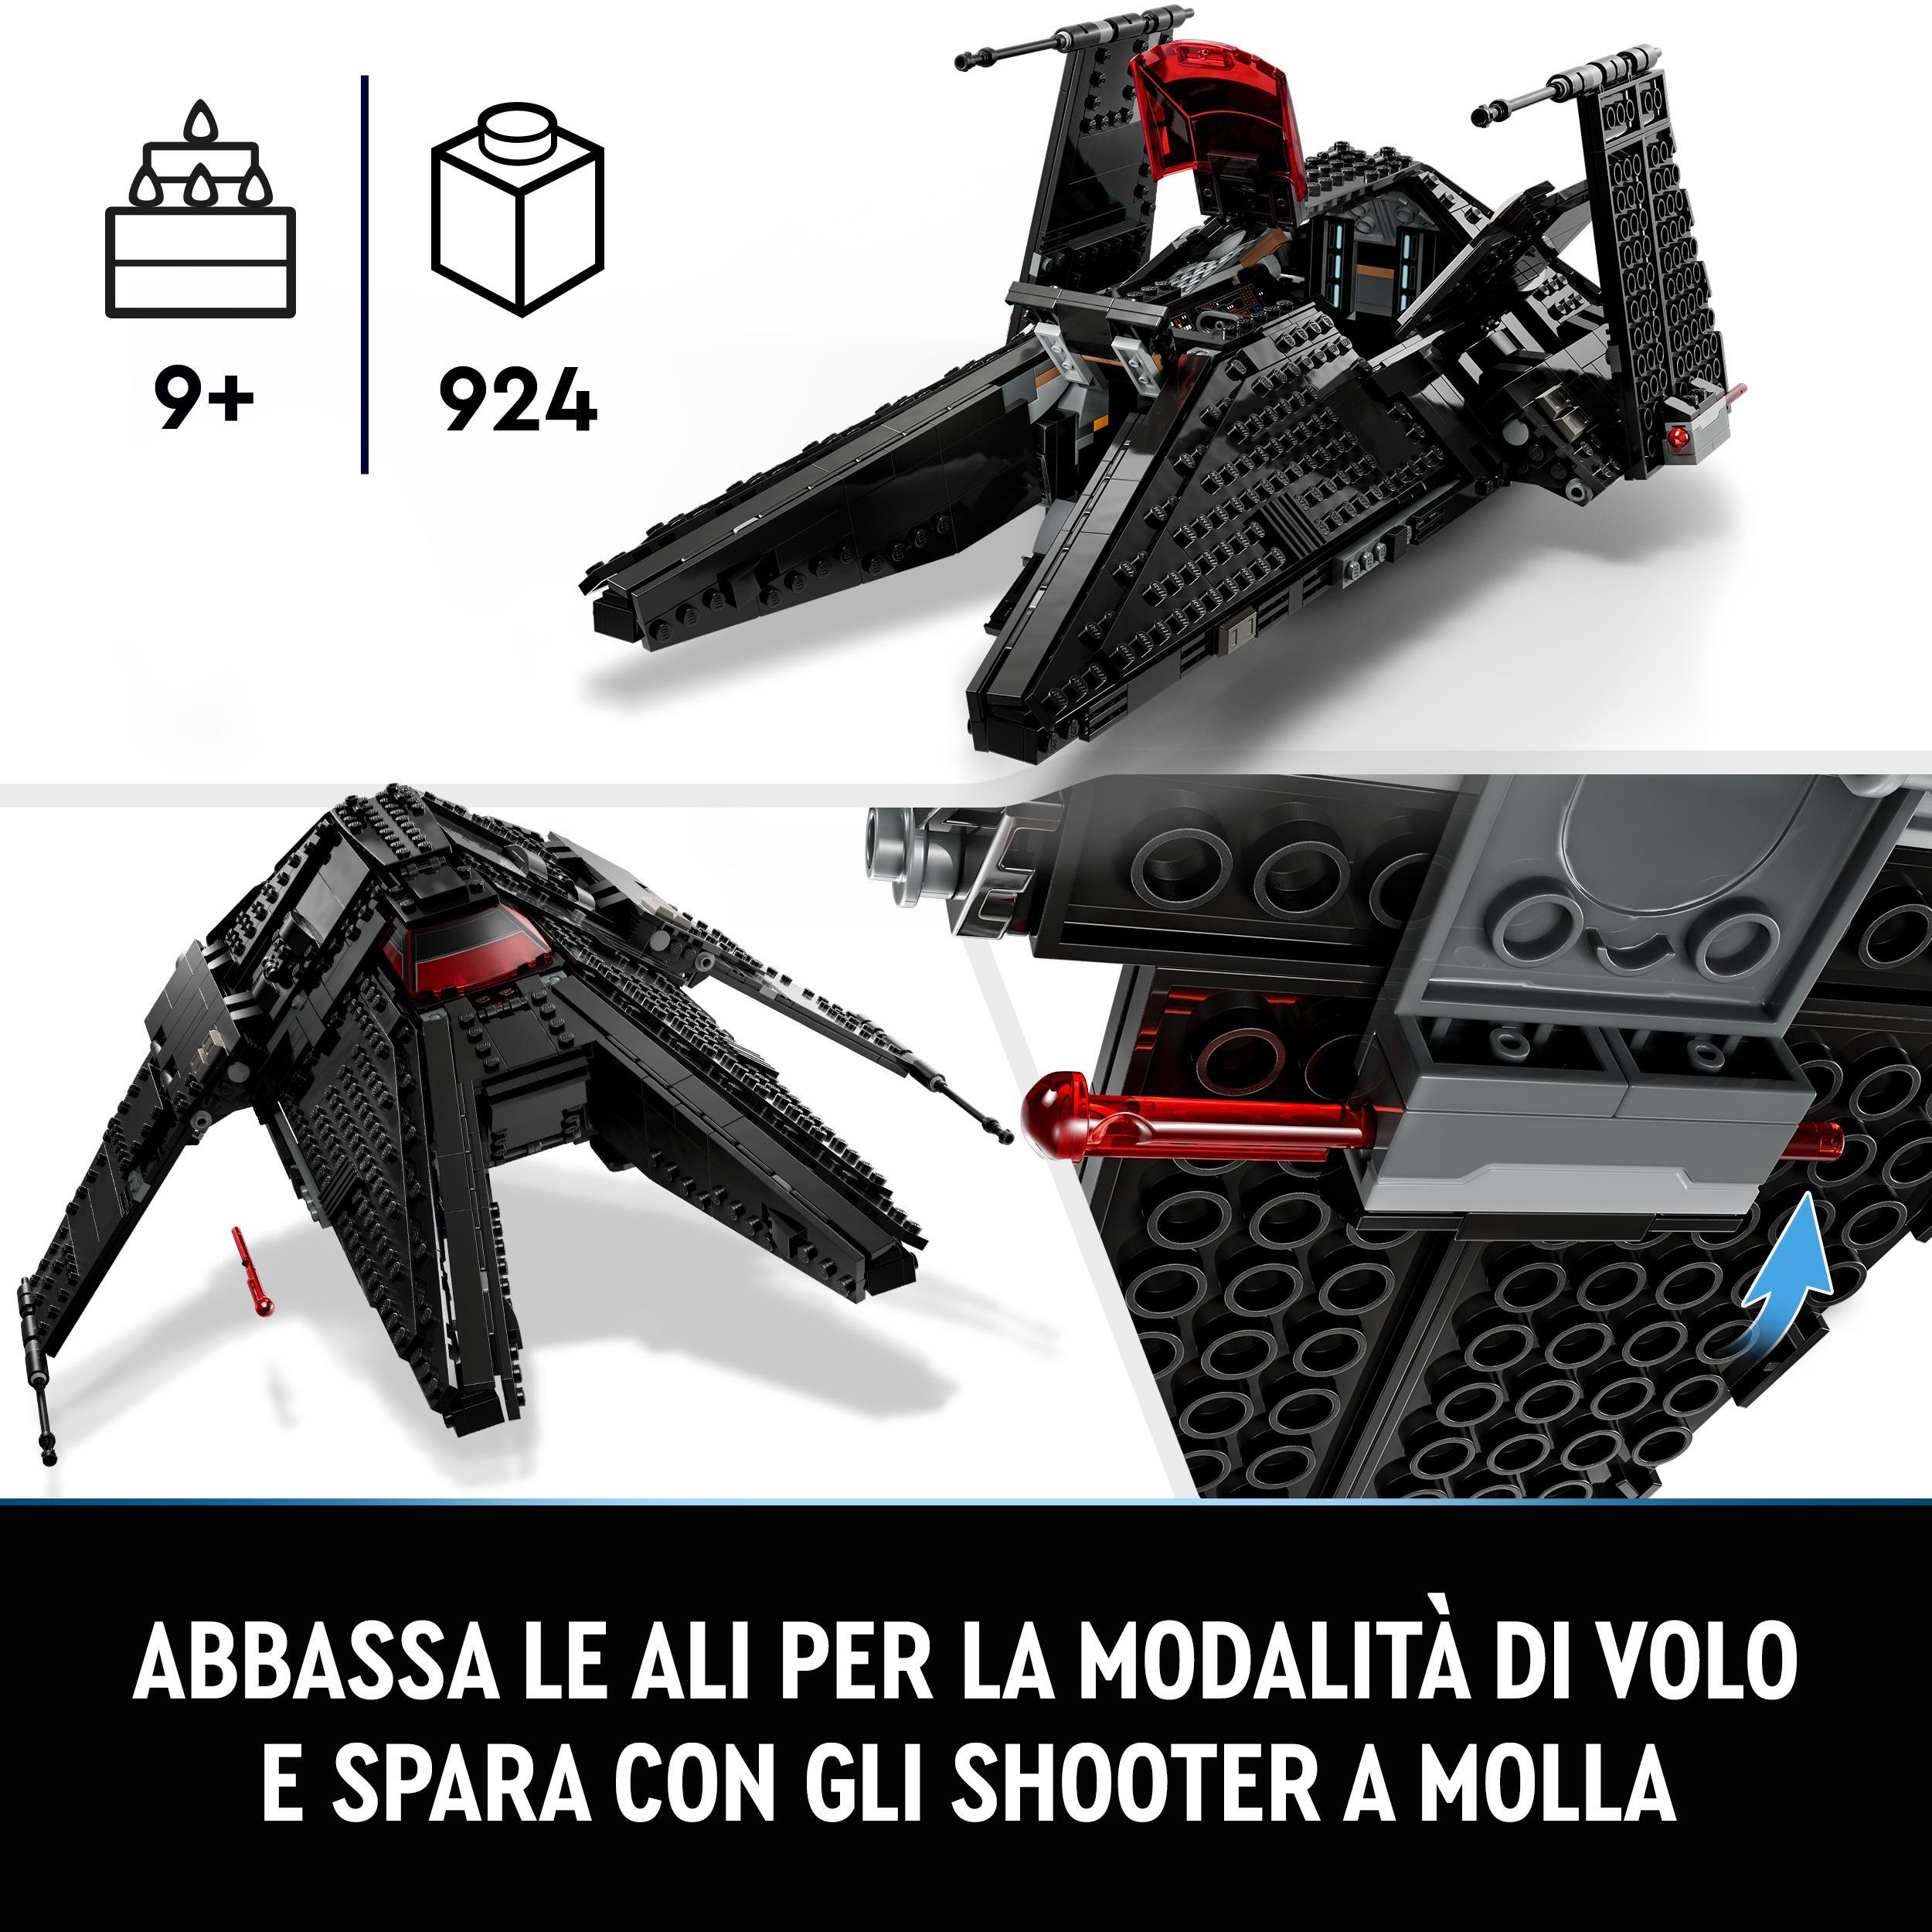 Lego star wars 75336 trasporto dell'inquisitore scythe, astronave giocattolo con minifigure di ben kenobi con spada laser - LEGO® Star Wars™